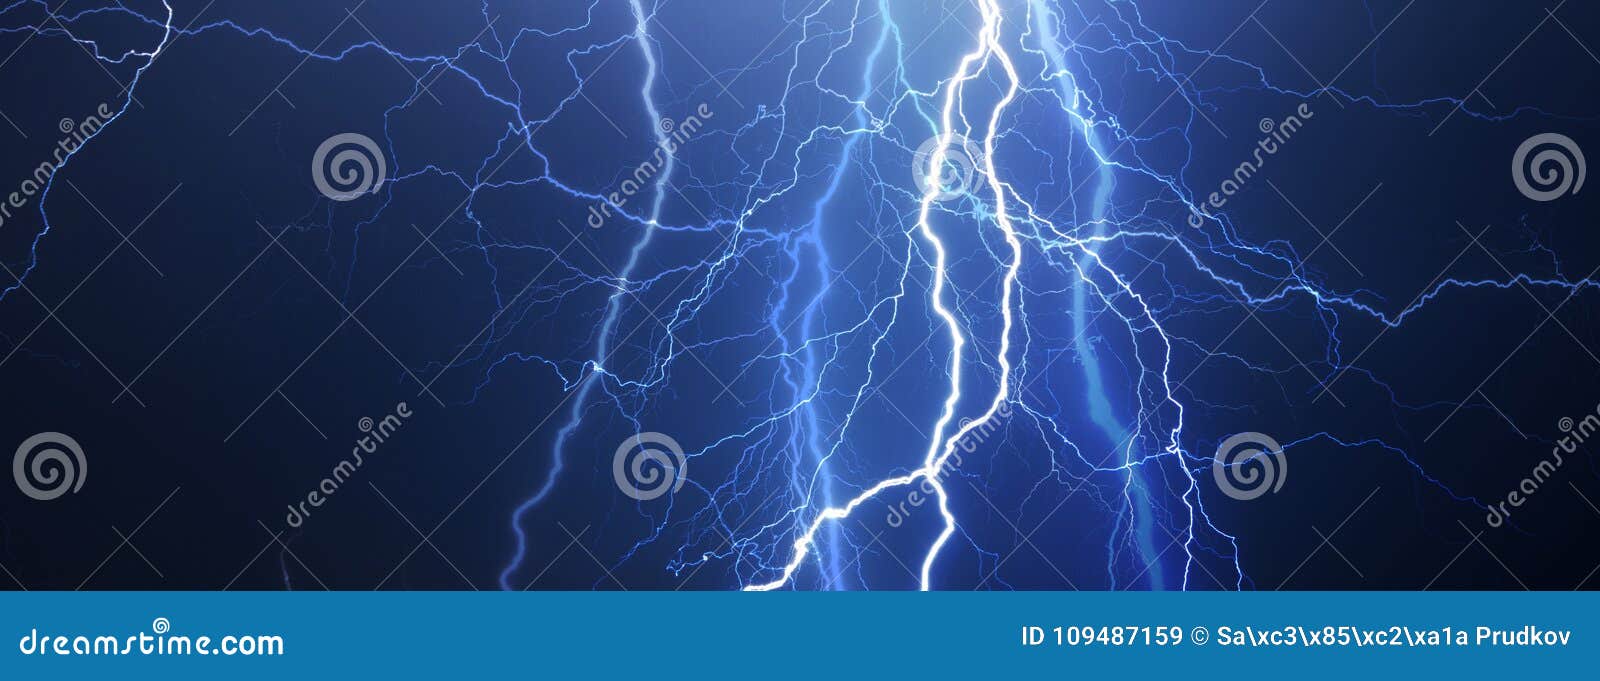 thunder, lightnings and rain